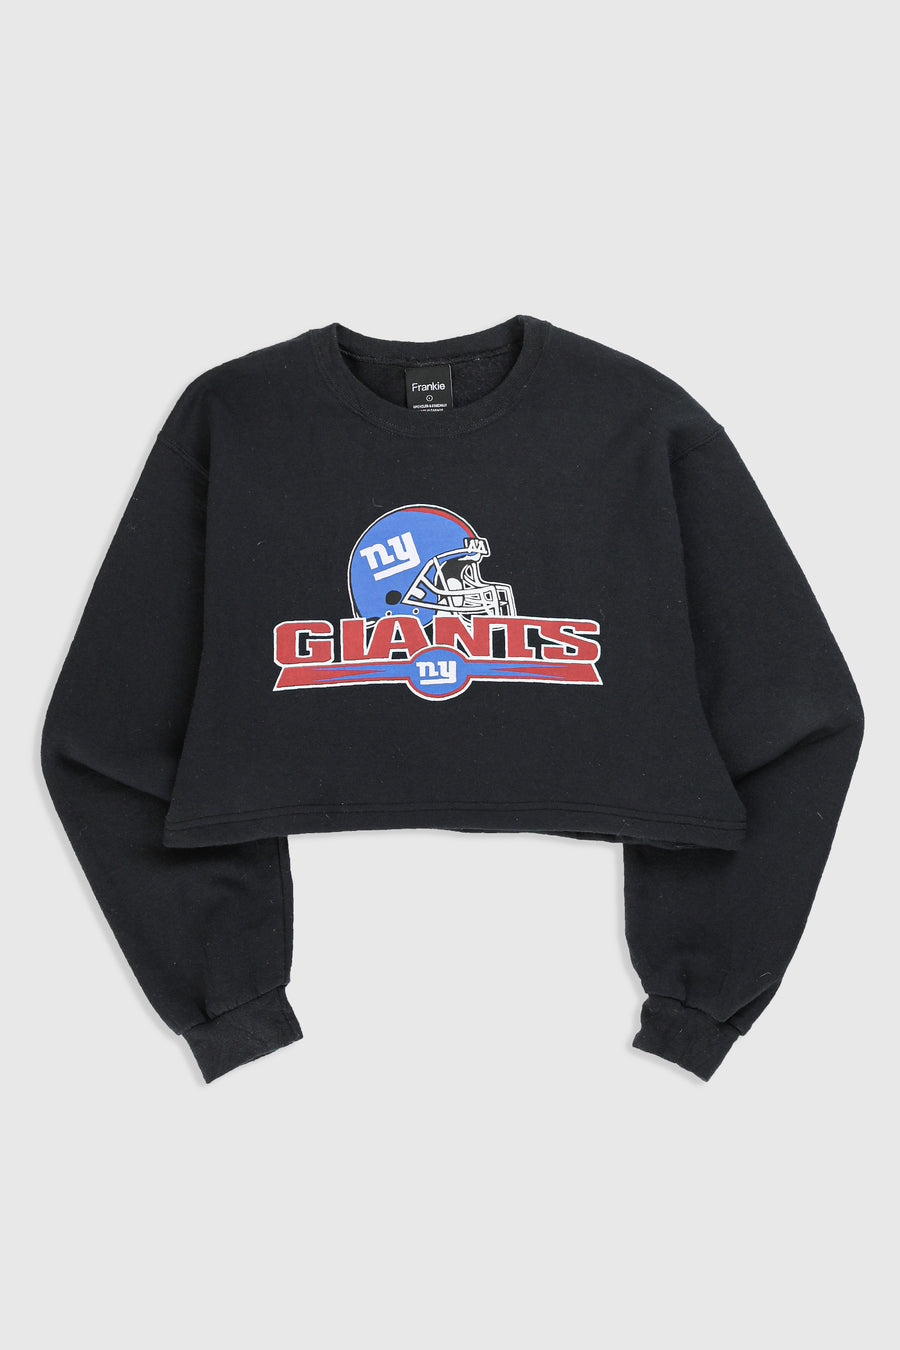 Rework NY Giants Crop Sweatshirt - L